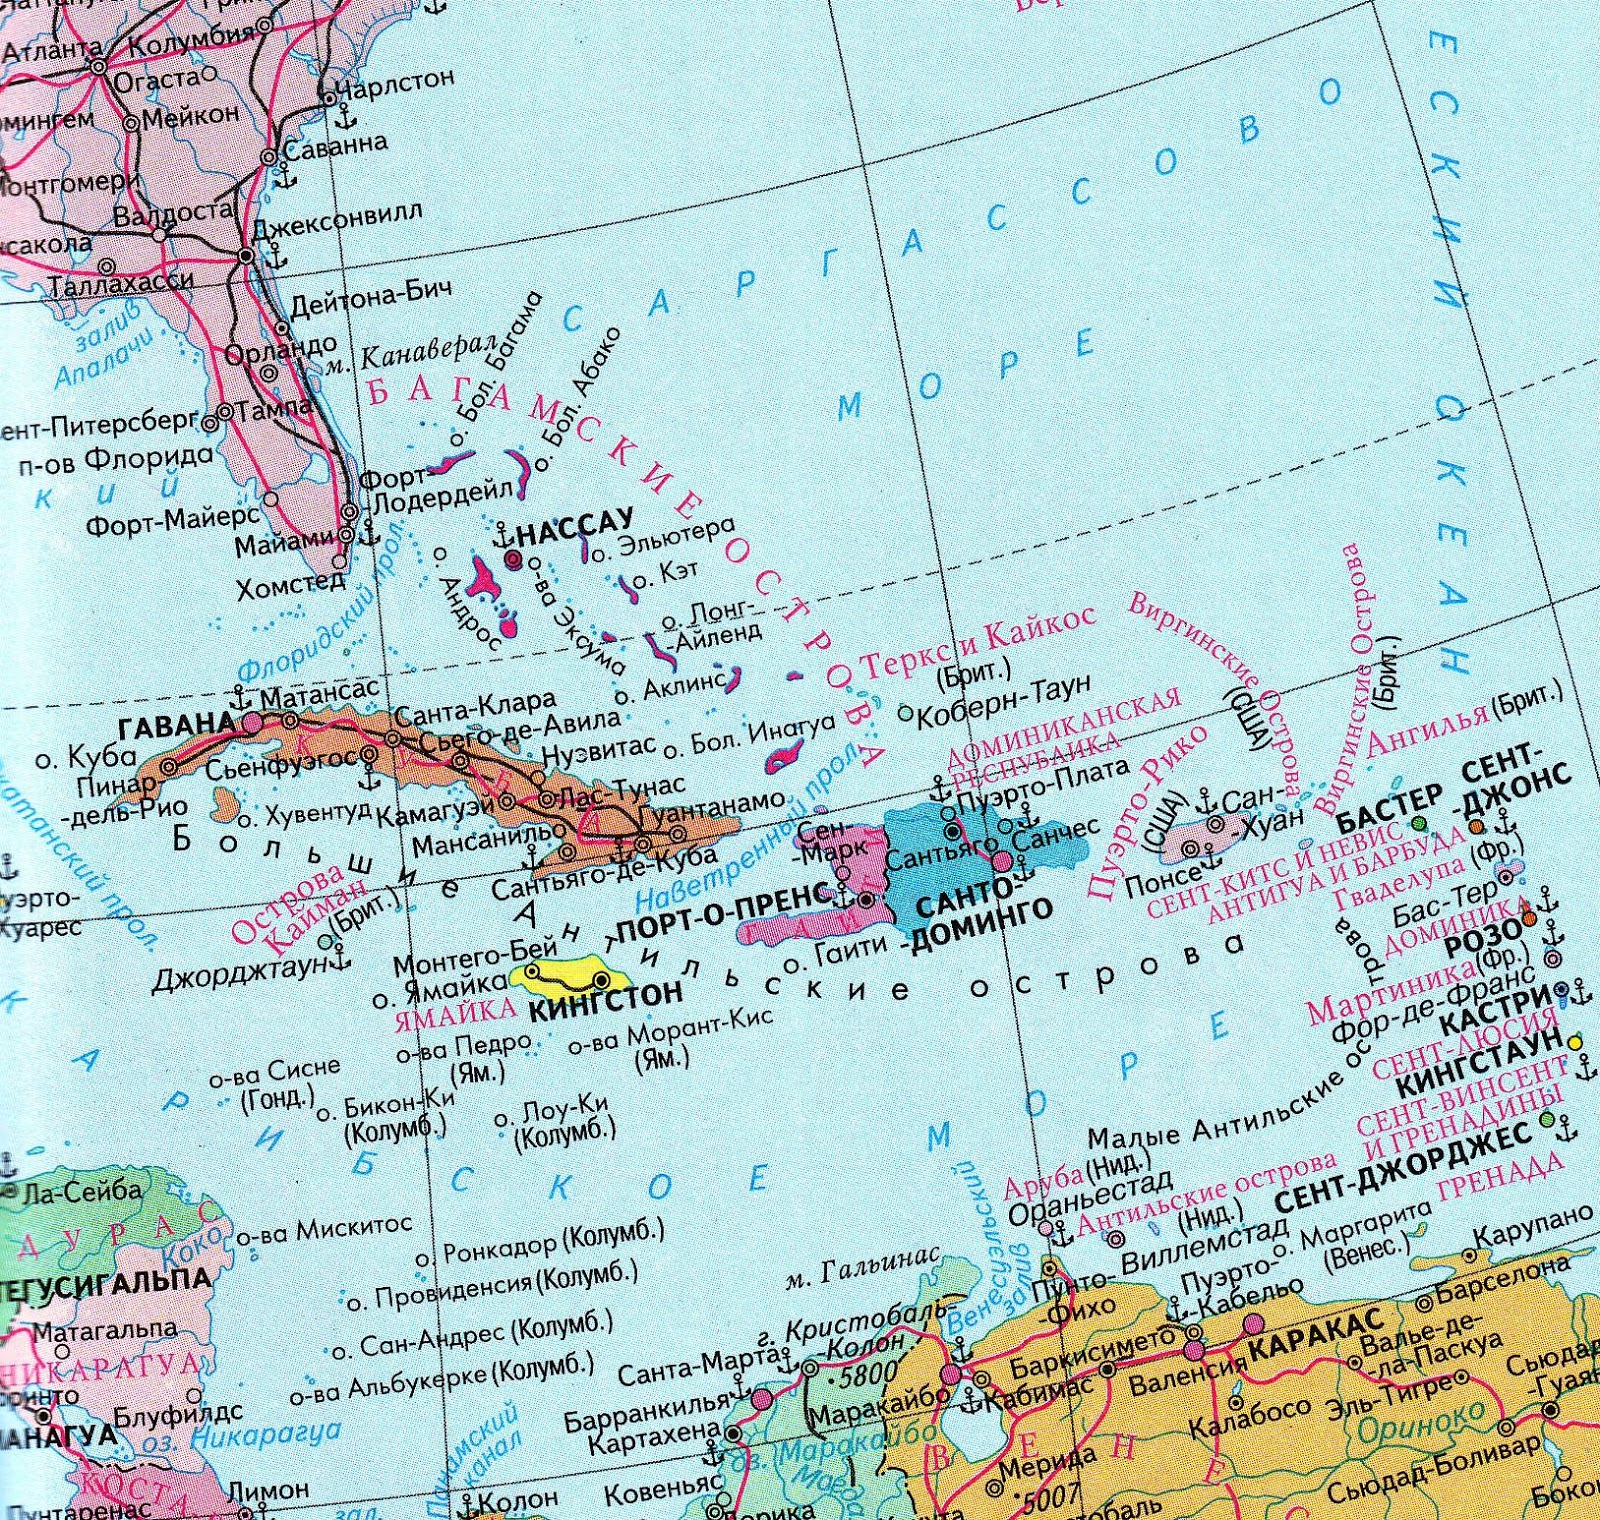 Южная часть архипелага малых антильских островов называется. Малые Антильские острова на карте Северной Америки. Большие Антильские острова на физической карте Северной Америки. Где находится малые Антильские острова на карте Северной Америки. Большие и малые Антильские острова на карте Северной Америки.